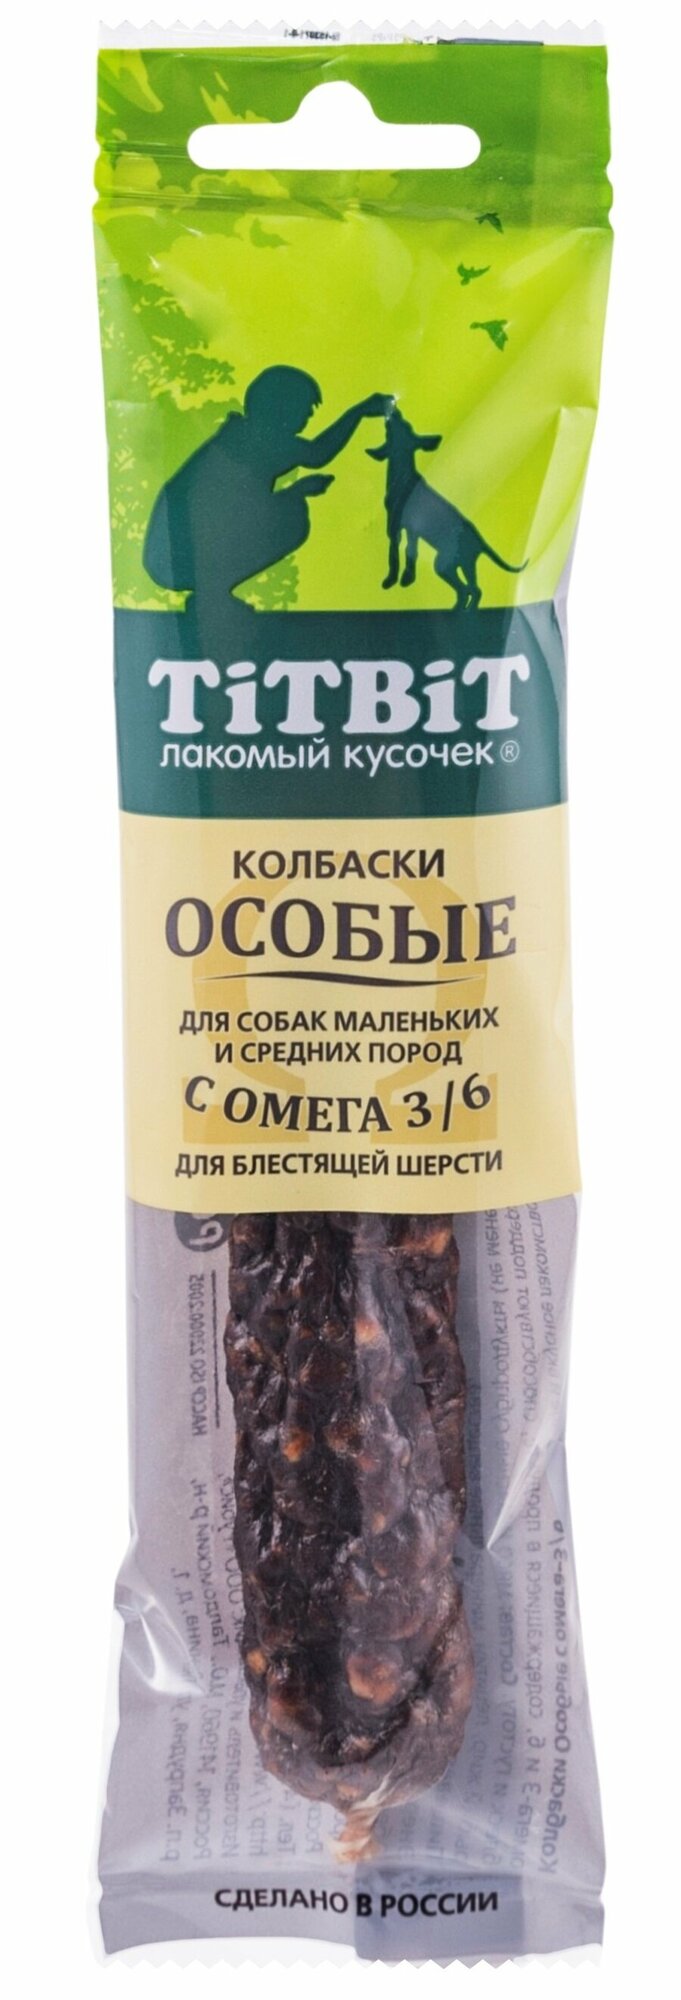 TitBit Колбаски Особые с омега 3/6 для собак маленьких и средних пород 30г